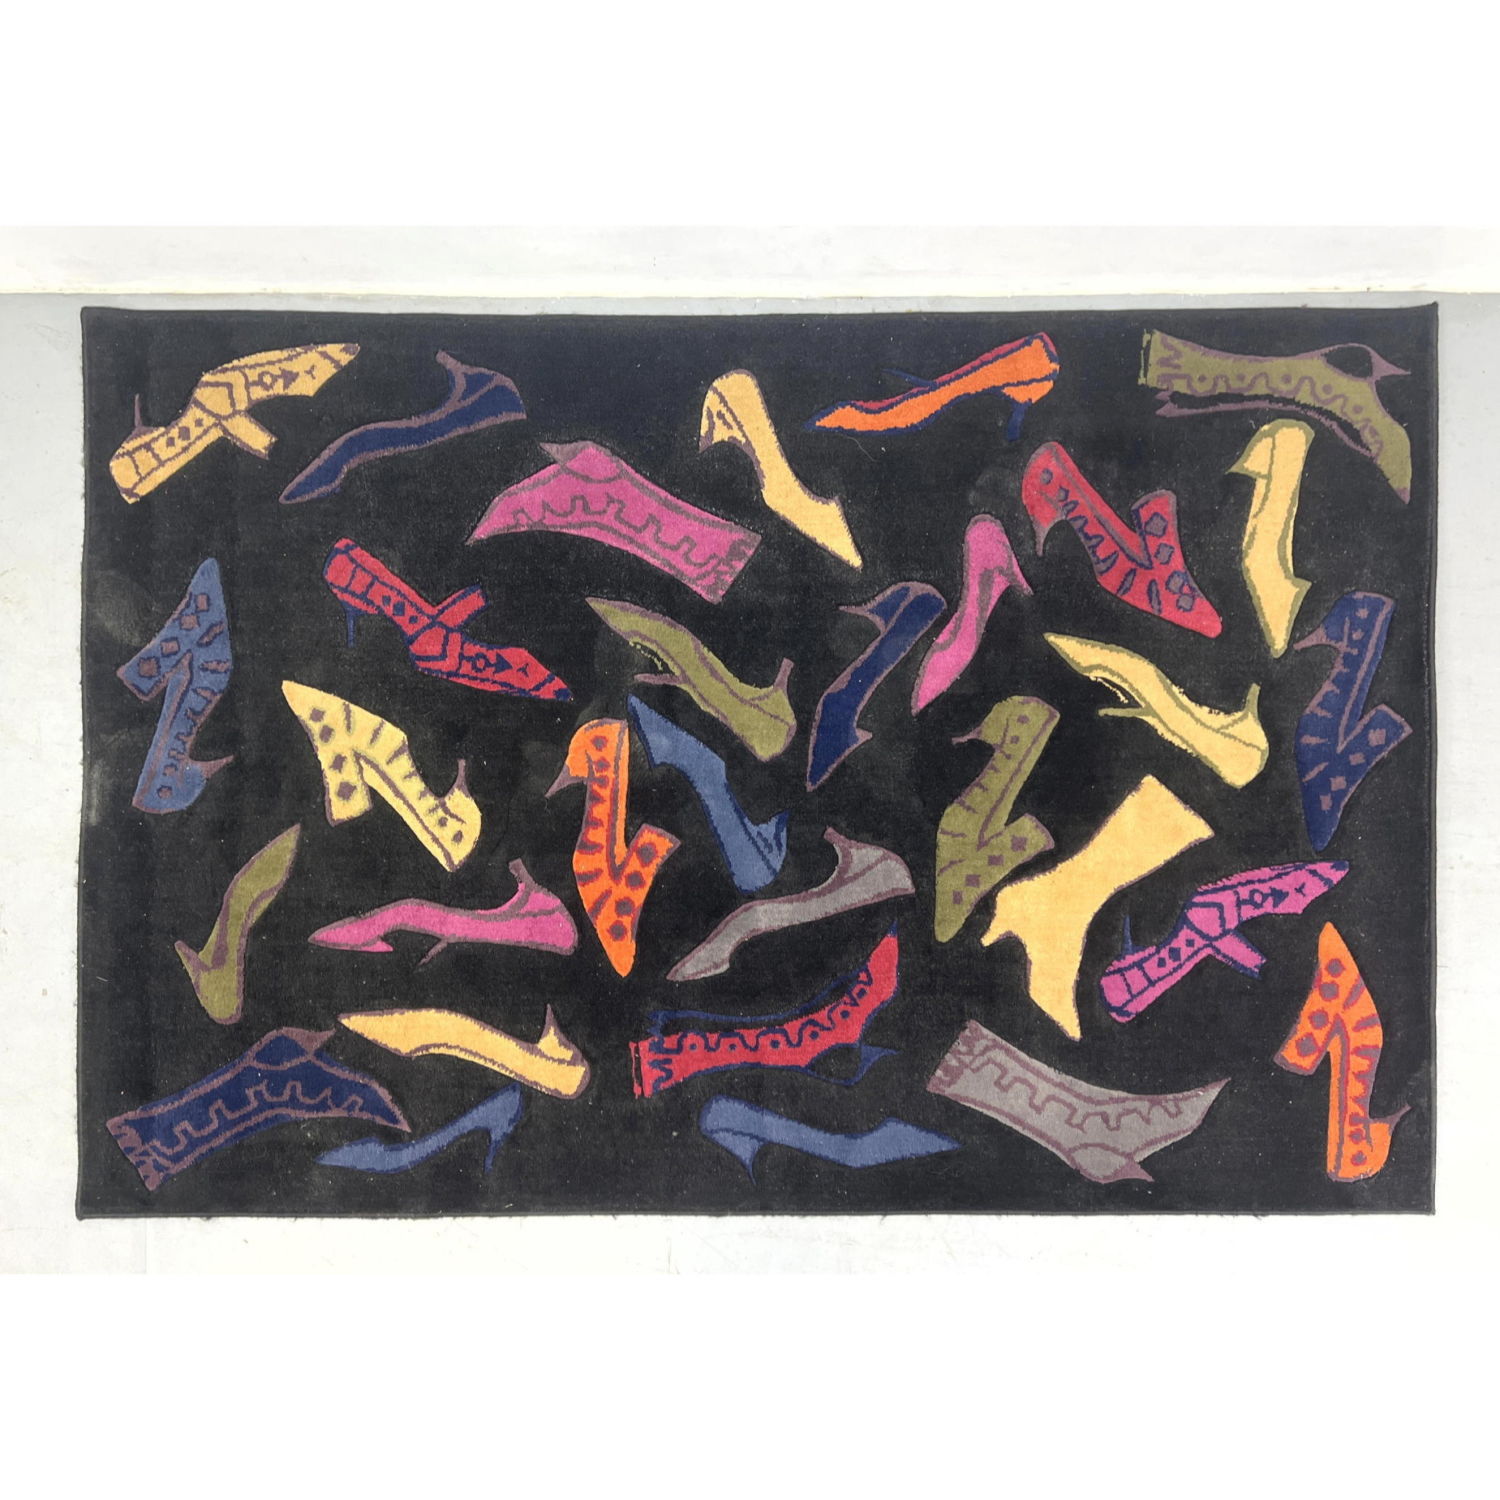 7’9 x 5’2 Andy Warhol rug.